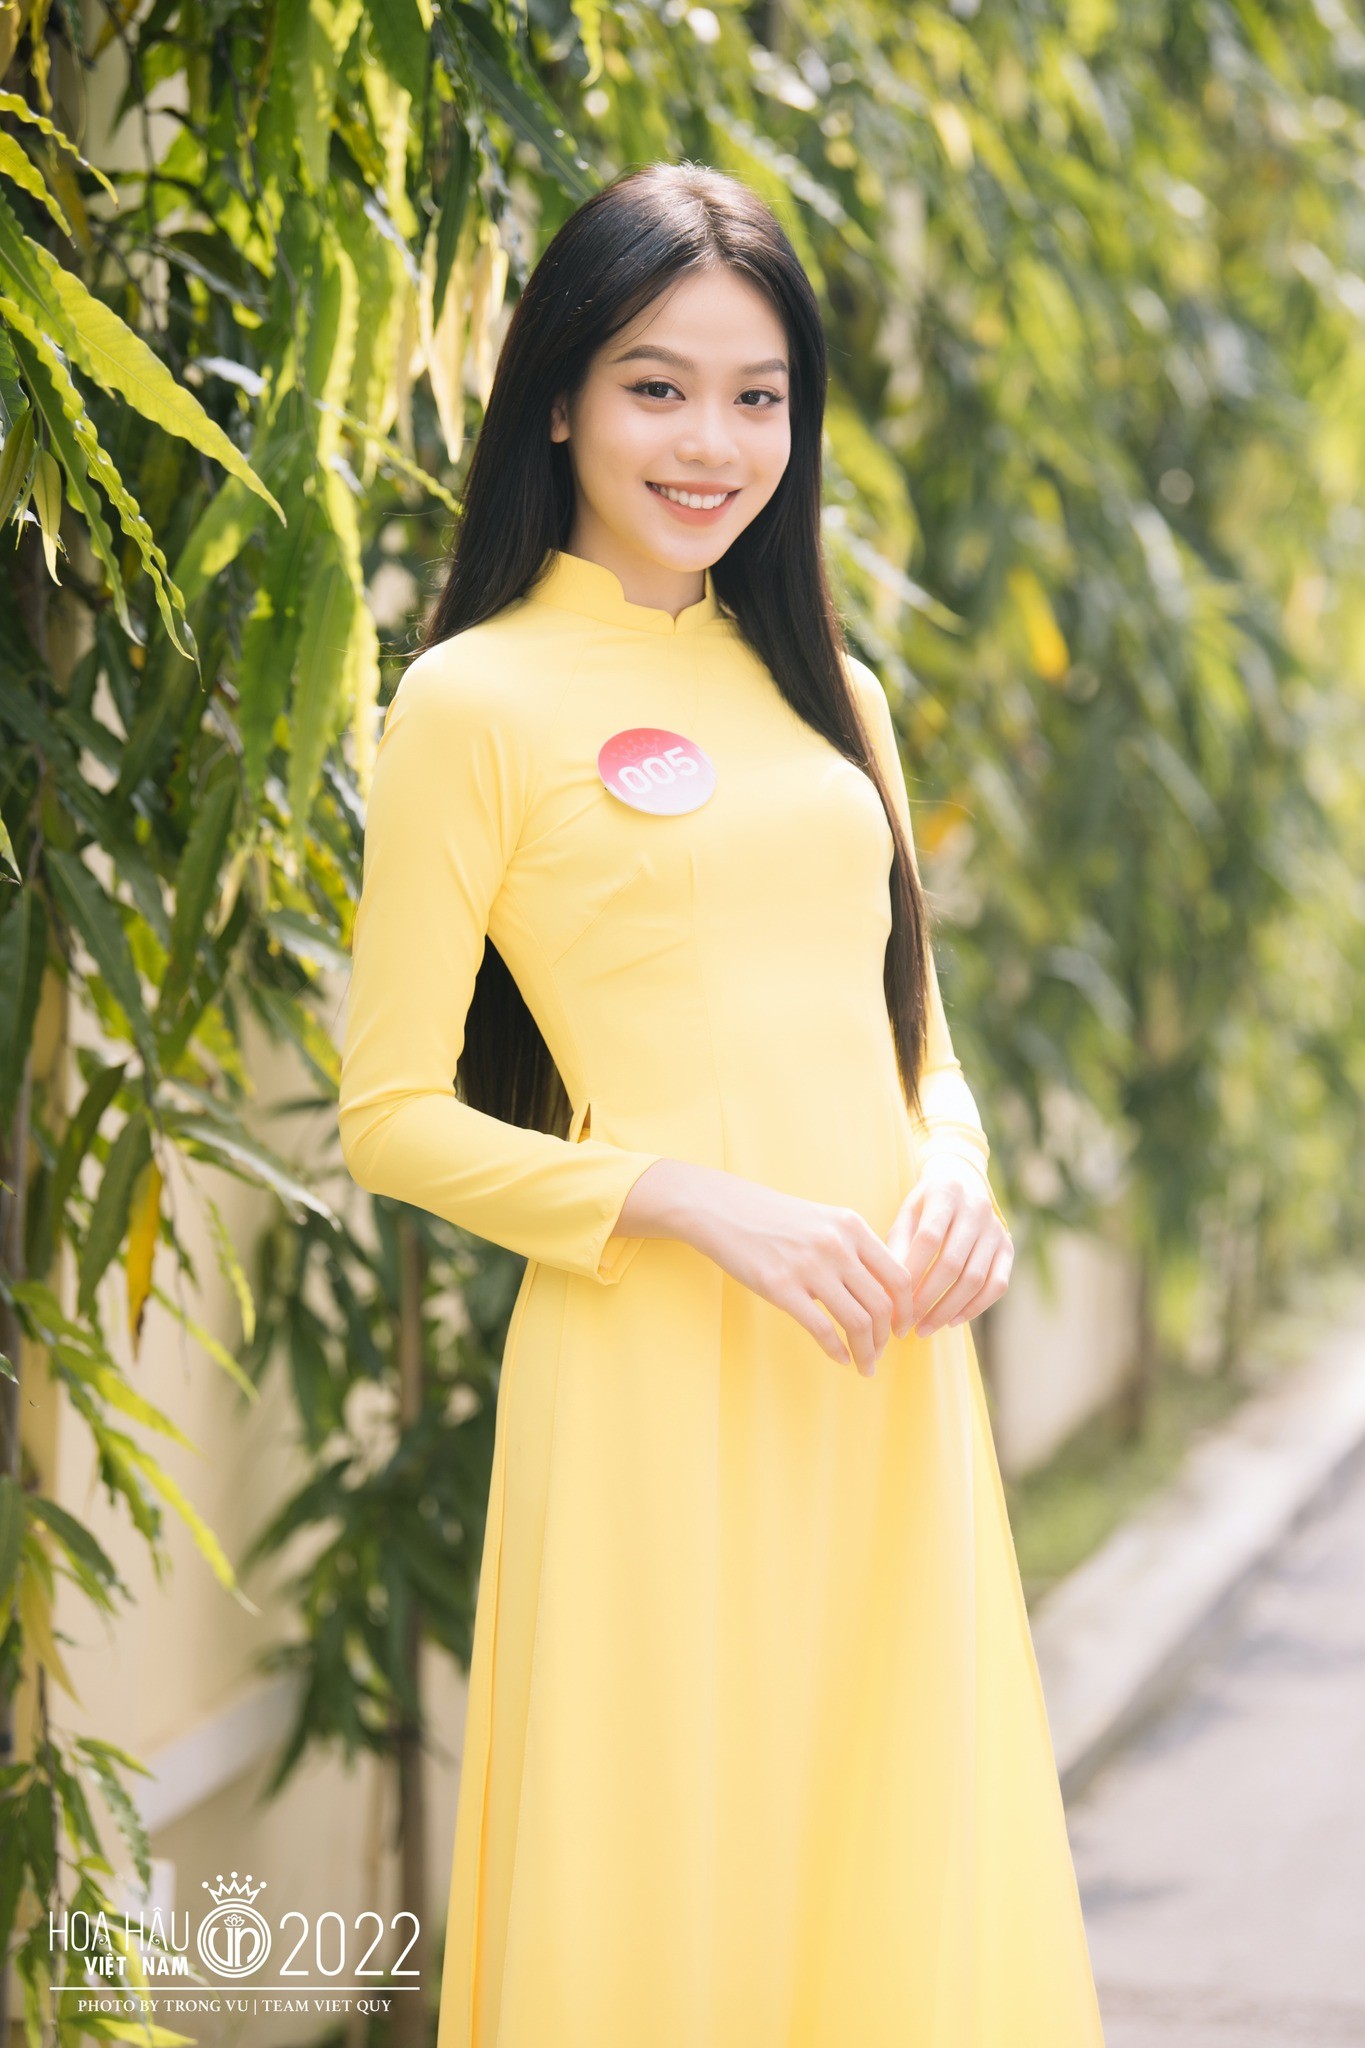 Cách Hoa hậu Huỳnh Thị Thanh Thủy gây chú ý - Ảnh 18.